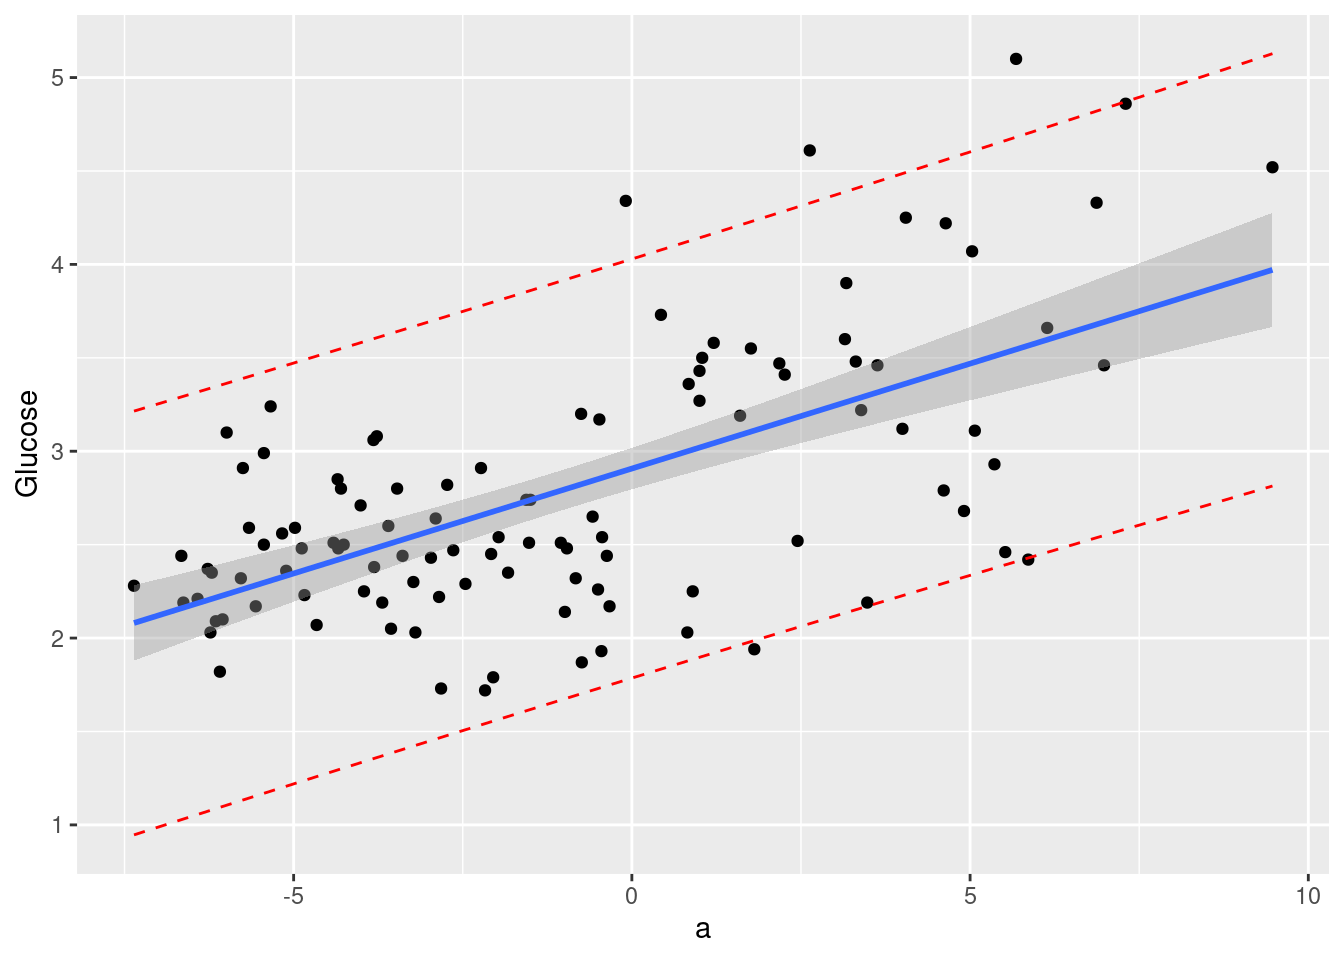 La ligne bleue indique le taux de Glucose moyen prédit par le modèle en fonction de l'indice a, la zone grisée représente l'intervalle de confiance pour ce taux moyen tandis que les deux lignes pointillées rouges délimitent le taux de Glucose prédit pour un abricot selon son indice a